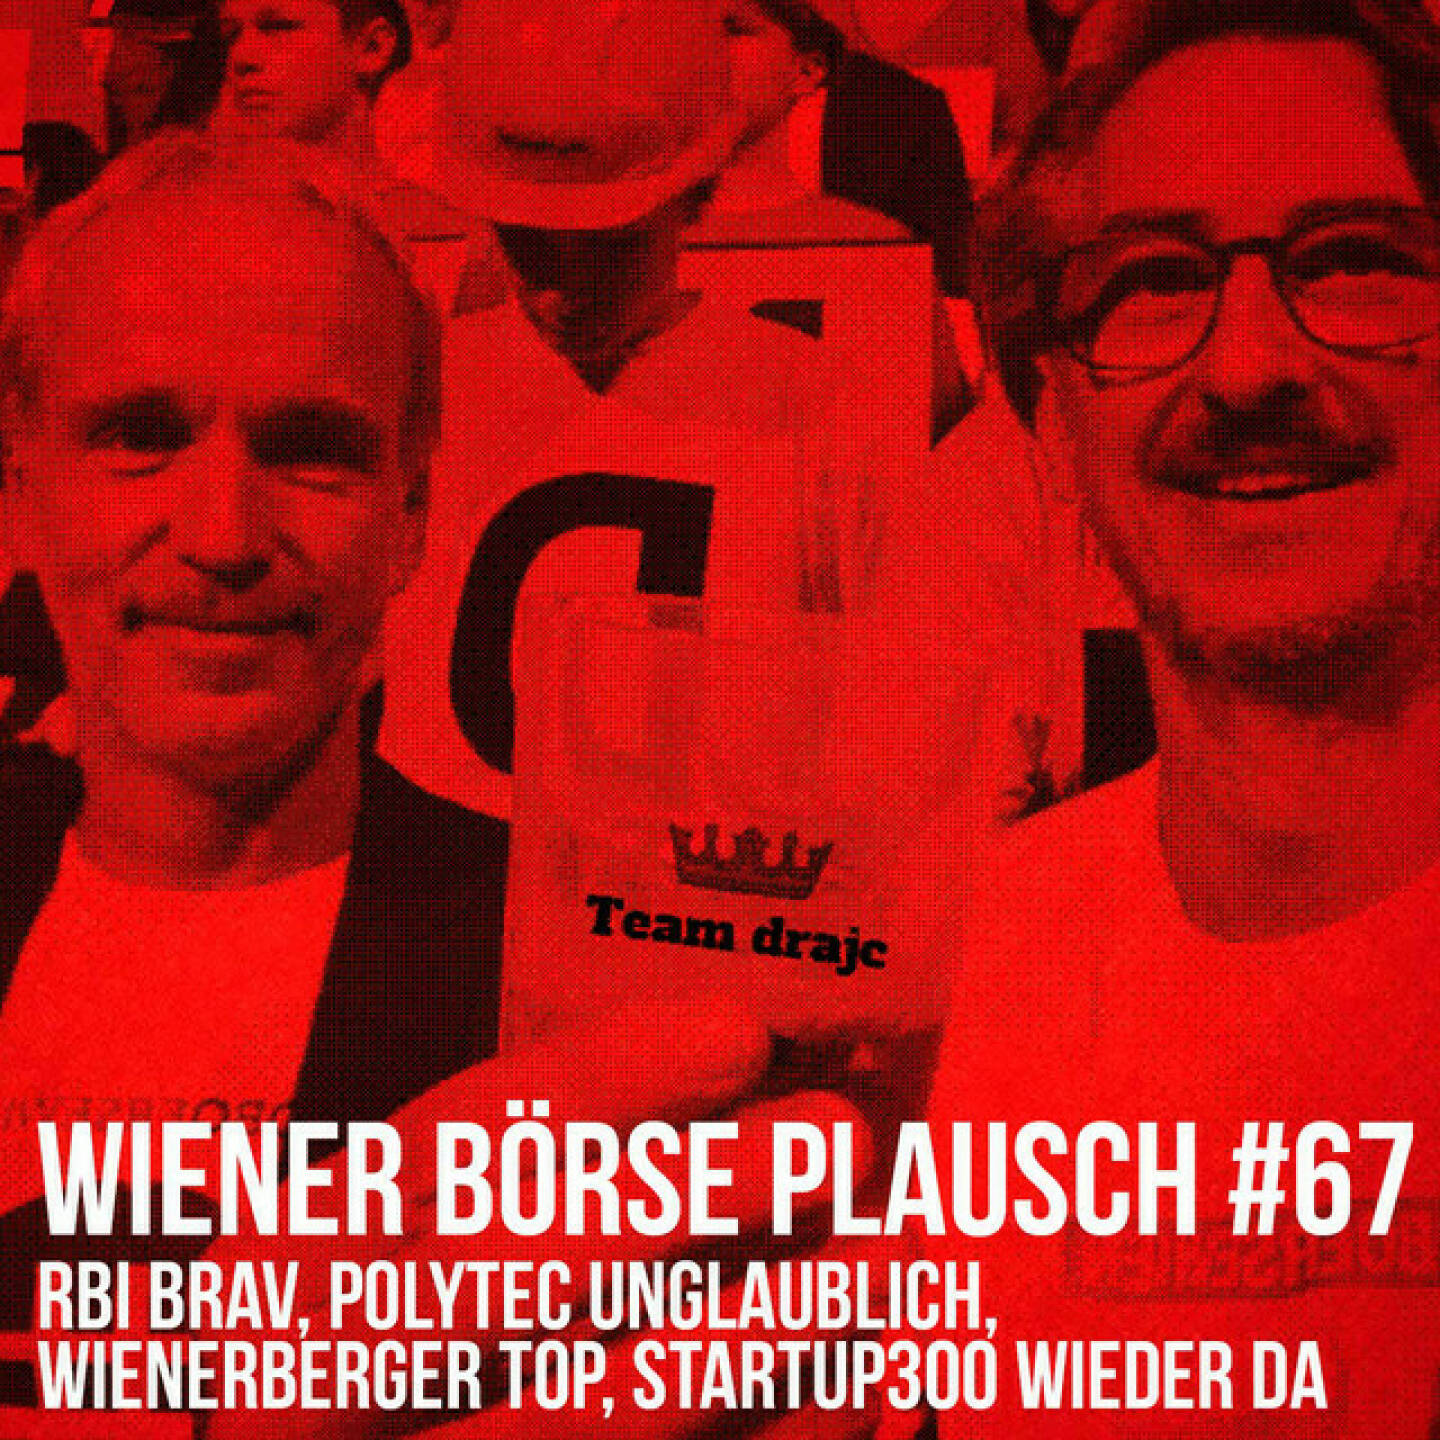 https://open.spotify.com/episode/10l7CERNNWQQWfFtQ7gKKx
Wiener Börse Plausch #67: RBI brav, Polytec unglaublich, Wienerberger top, startup300 wieder da - <p>Team drajc, das sind die Börse Social Network Eigentümer Christian Drastil und Josef Chladek, quatscht in Wiener Börse Plausch #67 über RBI, Wienerberger, UBM, Bawag, CPI/S Immo, Palfinger, startup300, dazu gibt es ein paar Tipps. </p><br/><p>Erwähnt werden:<br/>Sebastian Leben Philipp Süss von Goldman Sachs: <a href=https://open.spotify.com/episode/6dD2ZWO95JEnACOm9TMANT rel=nofollow>https://open.spotify.com/episode/6dD2ZWO95JEnACOm9TMANT</a></p><br/><p>Workshop IPO Anmeldung: <a href=https://www.wienerborse.at/wissen/bildung-beruf/seminare-lehrgaenge/seminare/eigenkapitalfinanzierung-durch-boersengang/ rel=nofollow>https://www.wienerborse.at/wissen/bildung-beruf/seminare-lehrgaenge/seminare/eigenkapitalfinanzierung-durch-boersengang/</a></p><br/><p>Die Februar-Folgen vom Wiener Börse Plausch sind präsentiert von Wienerberger, CEO Heimo Scheuch hat sich im Q4 ebenfalls unter die Podcaster gemischt: <a href=https://open.spotify.com/show/5D4Gz8bpAYNAI6tg7H695E rel=nofollow>https://open.spotify.com/show/5D4Gz8bpAYNAI6tg7H695E</a> . Co-Presenter ist UBM, siehe auch die überarbeitete <a href=https://boersenradio.at rel=nofollow>https://boersenradio.at</a></p><br/><p>Risikohinweis: Die hier veröffentlichten Gedanken sind weder als Empfehlung noch als ein Angebot oder eine Aufforderung zum An- oder Verkauf von Finanzinstrumenten zu verstehen und sollen auch nicht so verstanden werden. Sie stellen lediglich die persönliche Meinung der Podcastmacher dar. Der Handel mit Finanzprod ukten unterliegt einem Risiko. Sie können Ihr eingesetztes Kapital verlieren.</p>